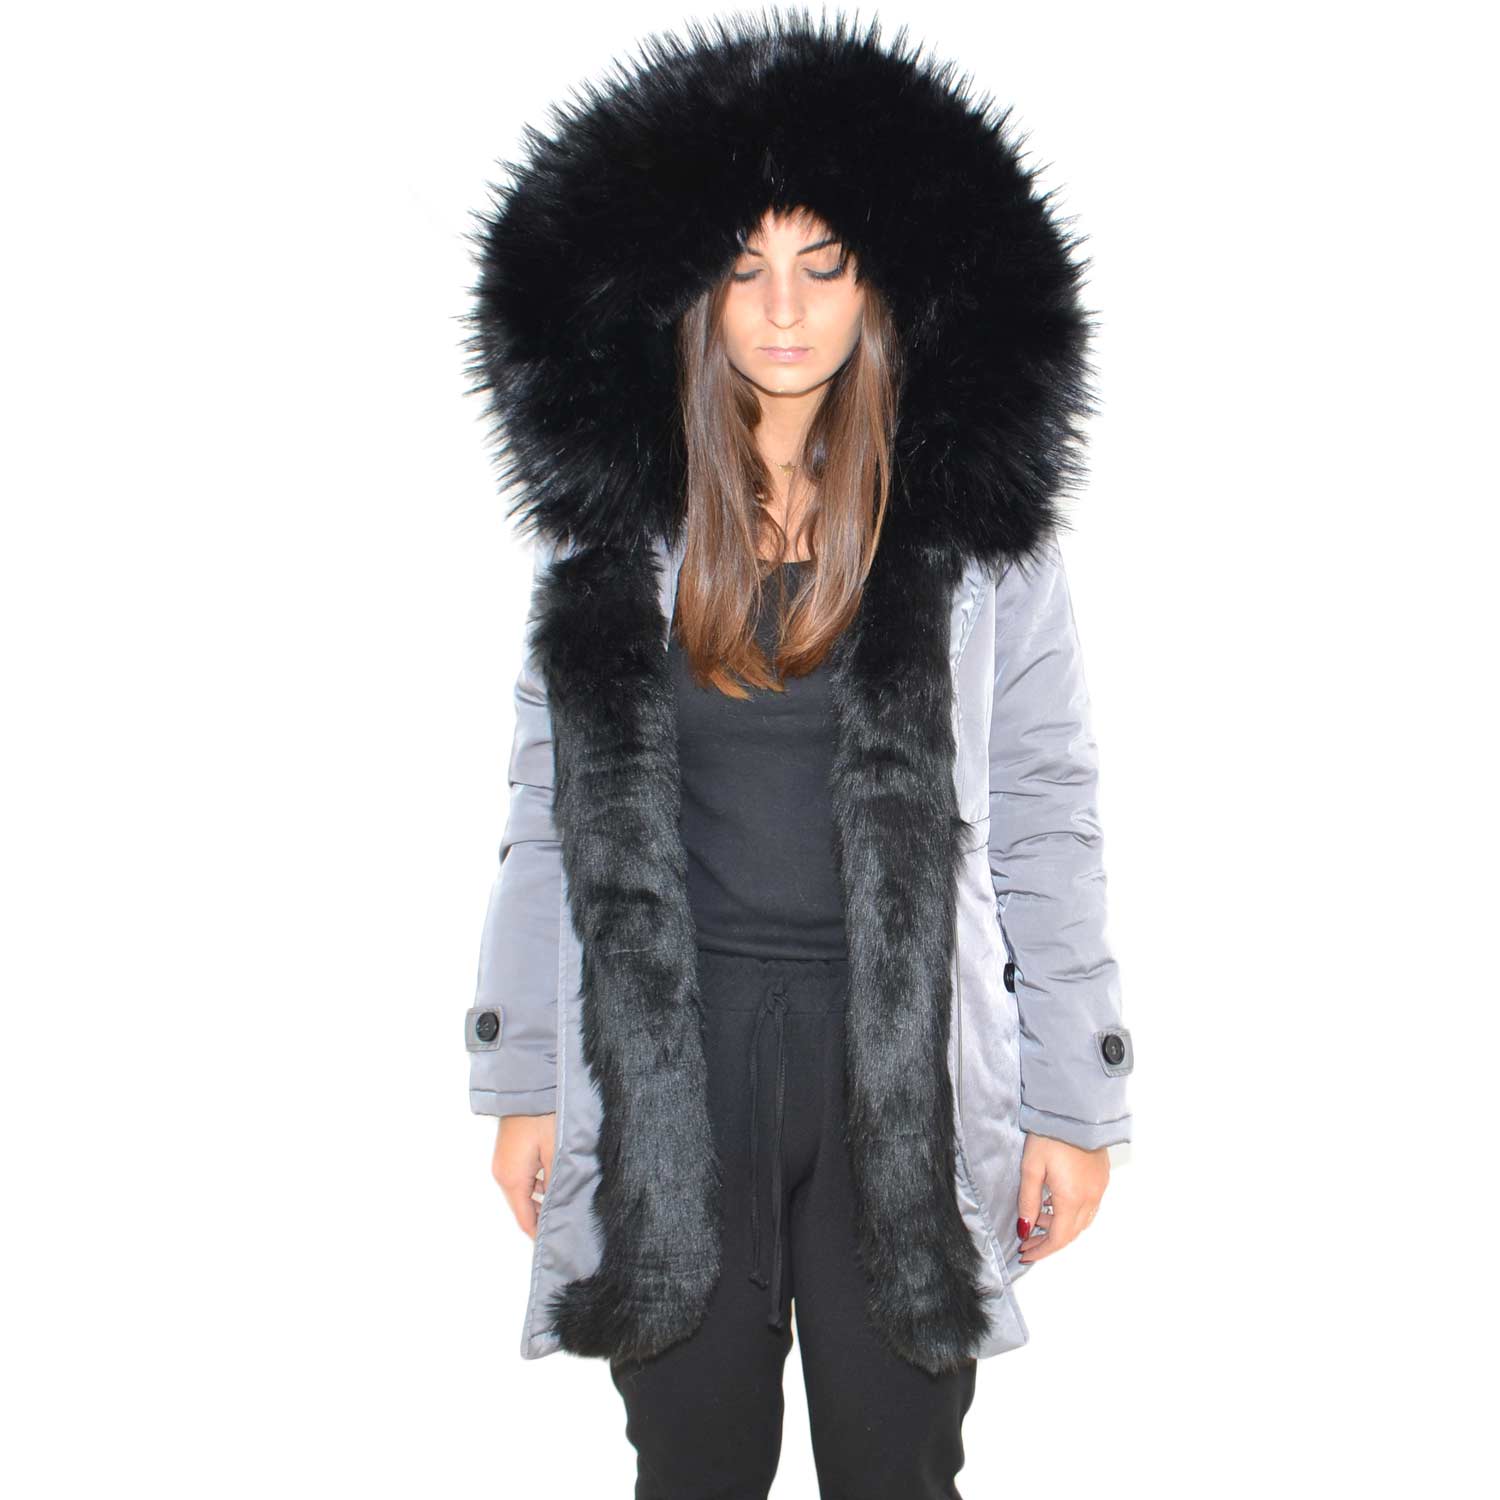 Parka donna invernale con pelliccia nero eco giacca giubbotto piumino lungo grigio pelo extra volume imbottito caldo mod.